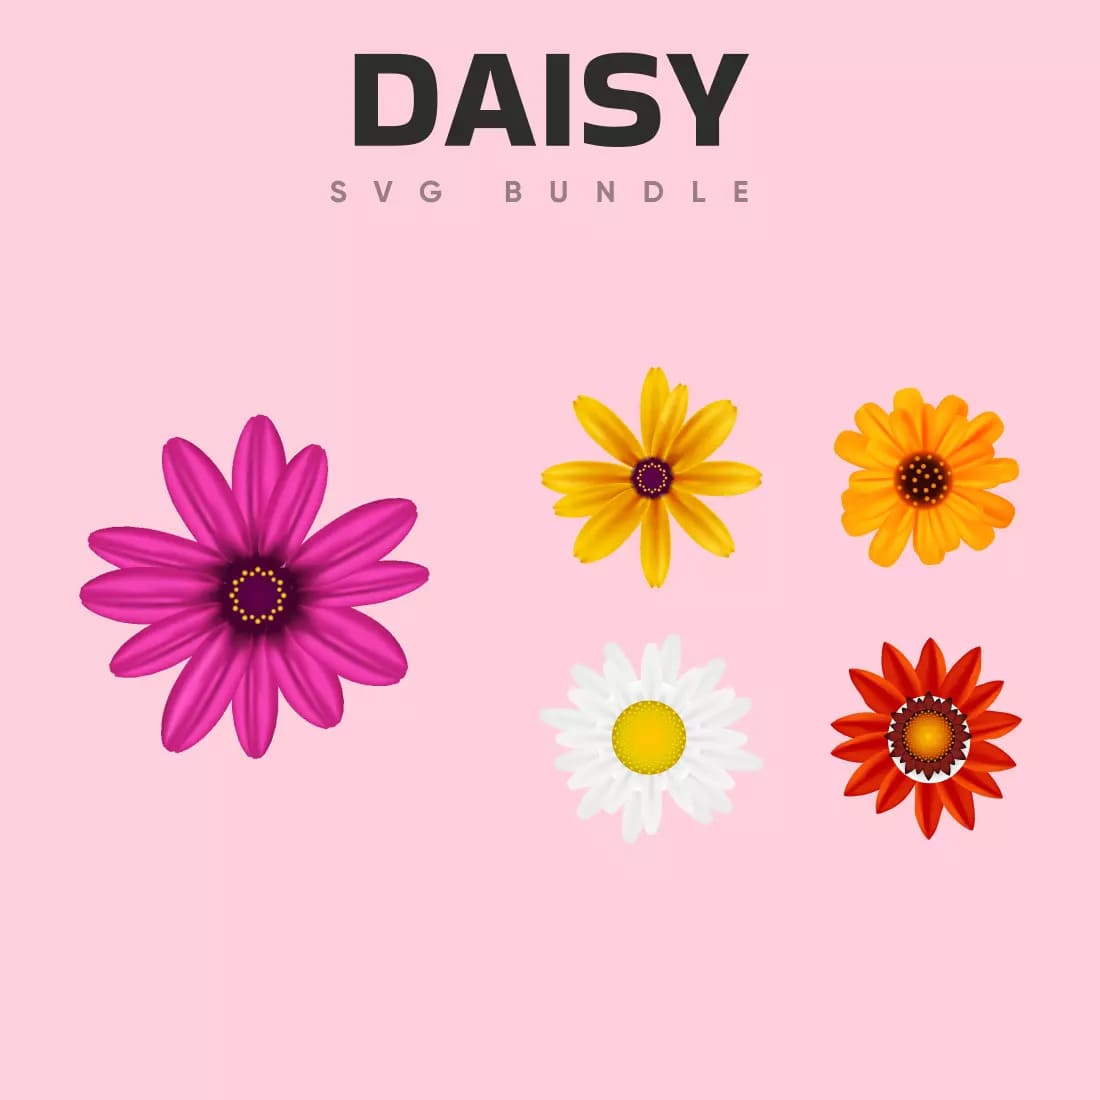 Daisy SVG Bundle Preview 6.